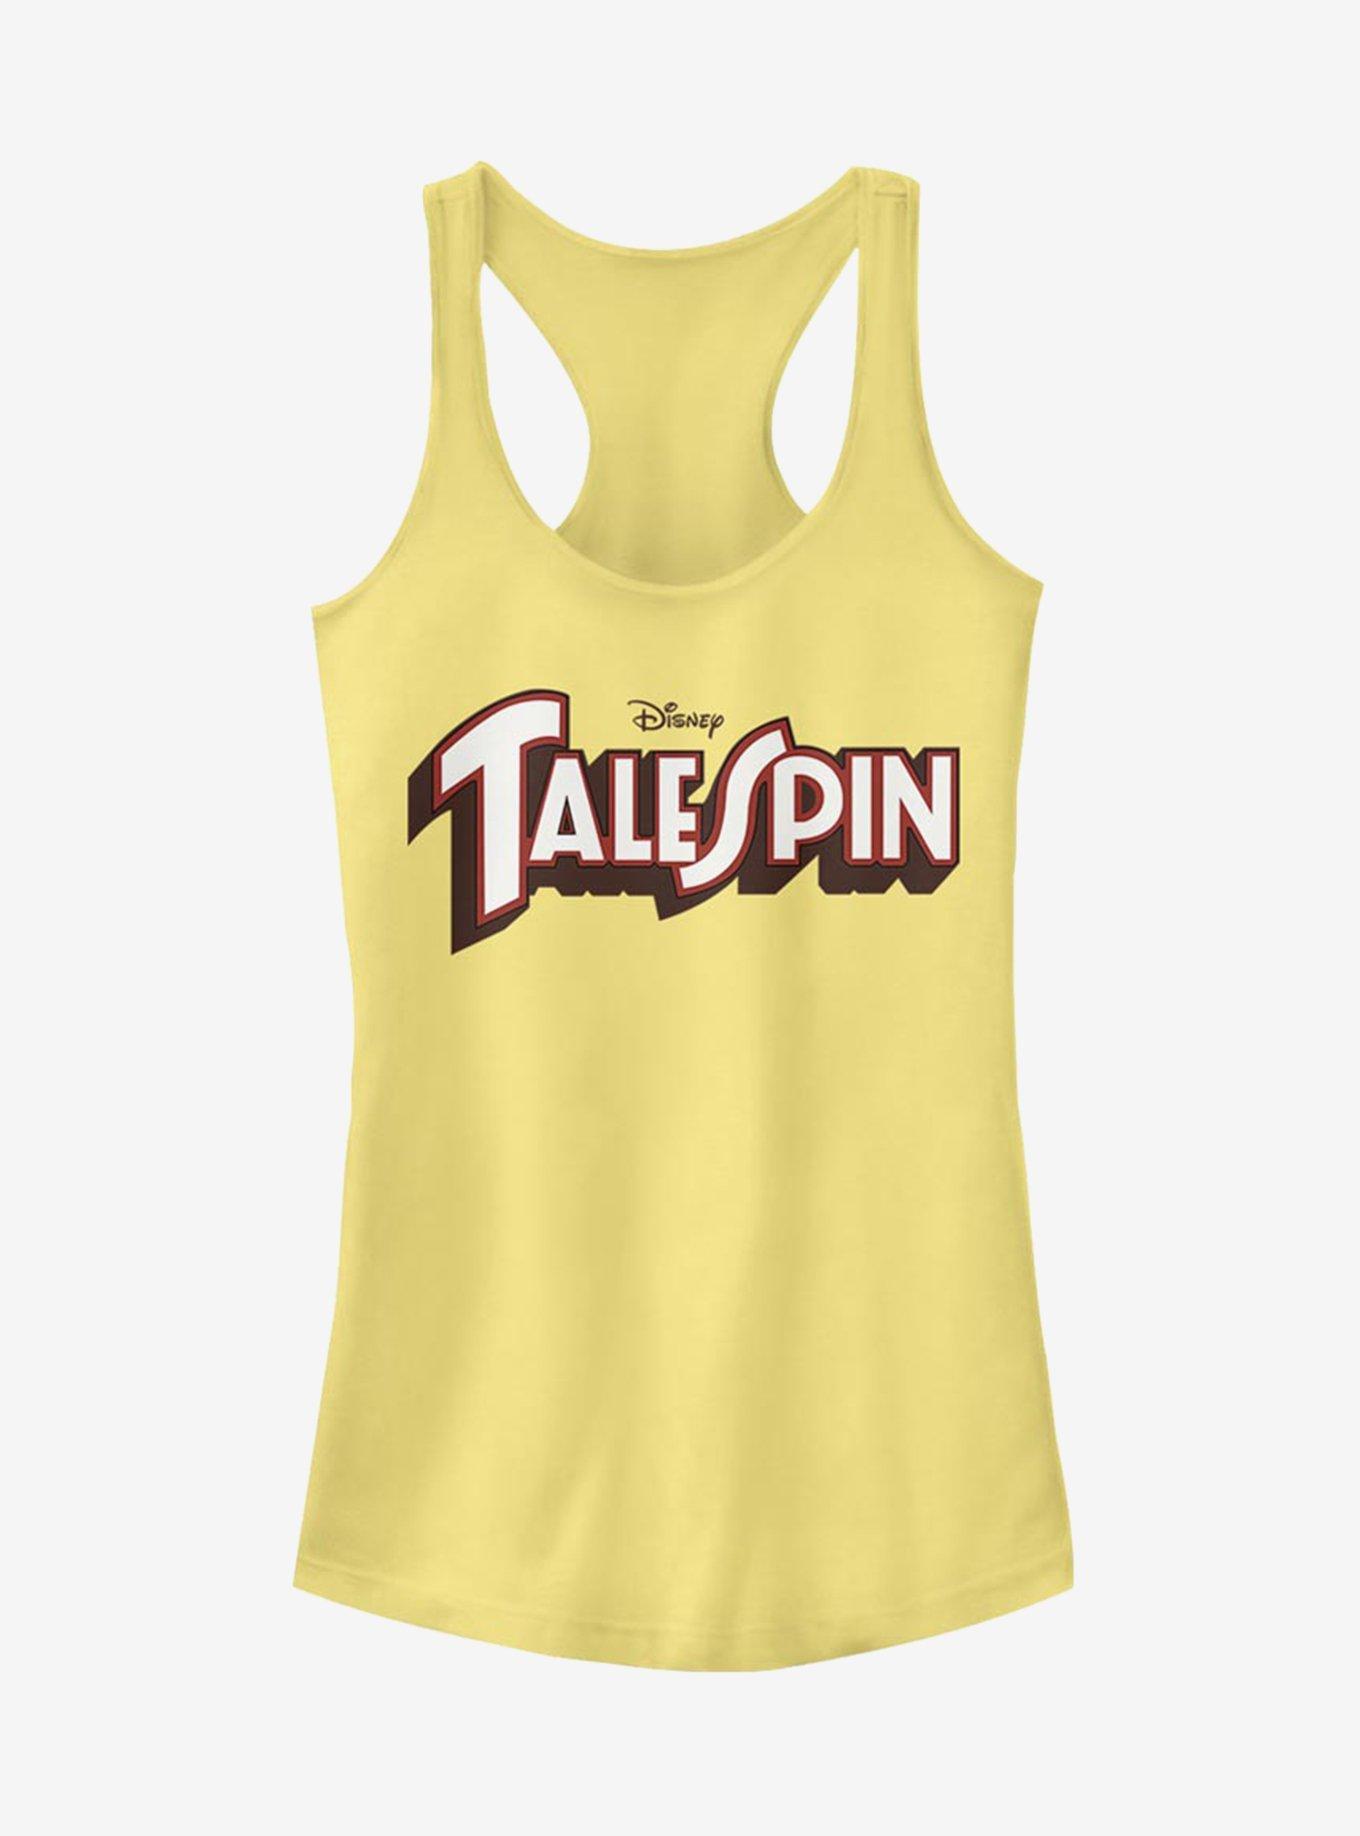 Disney TaleSpin Logo Spin Girls Tank, BANANA, hi-res